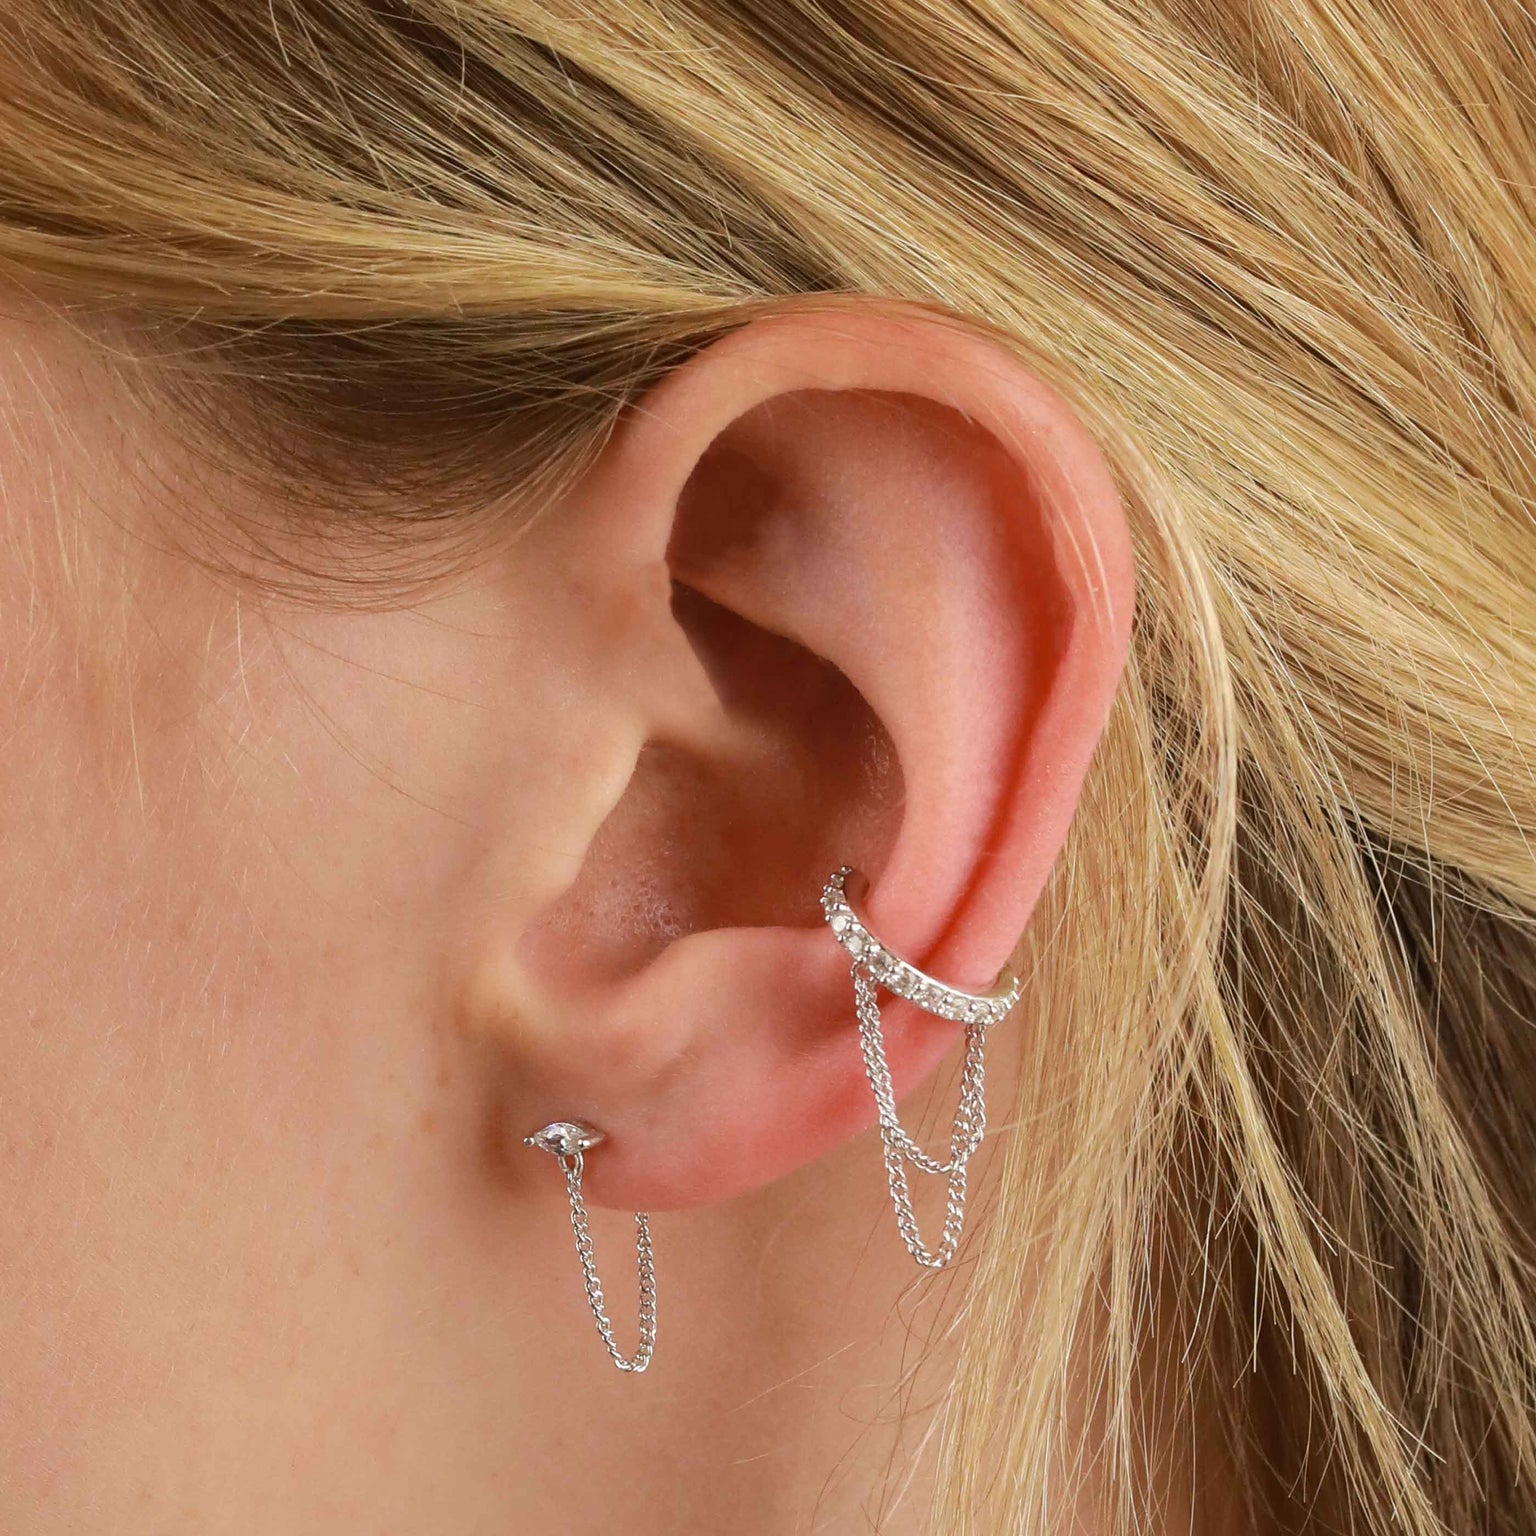 Crystal Chain Ear Cuff in Silver